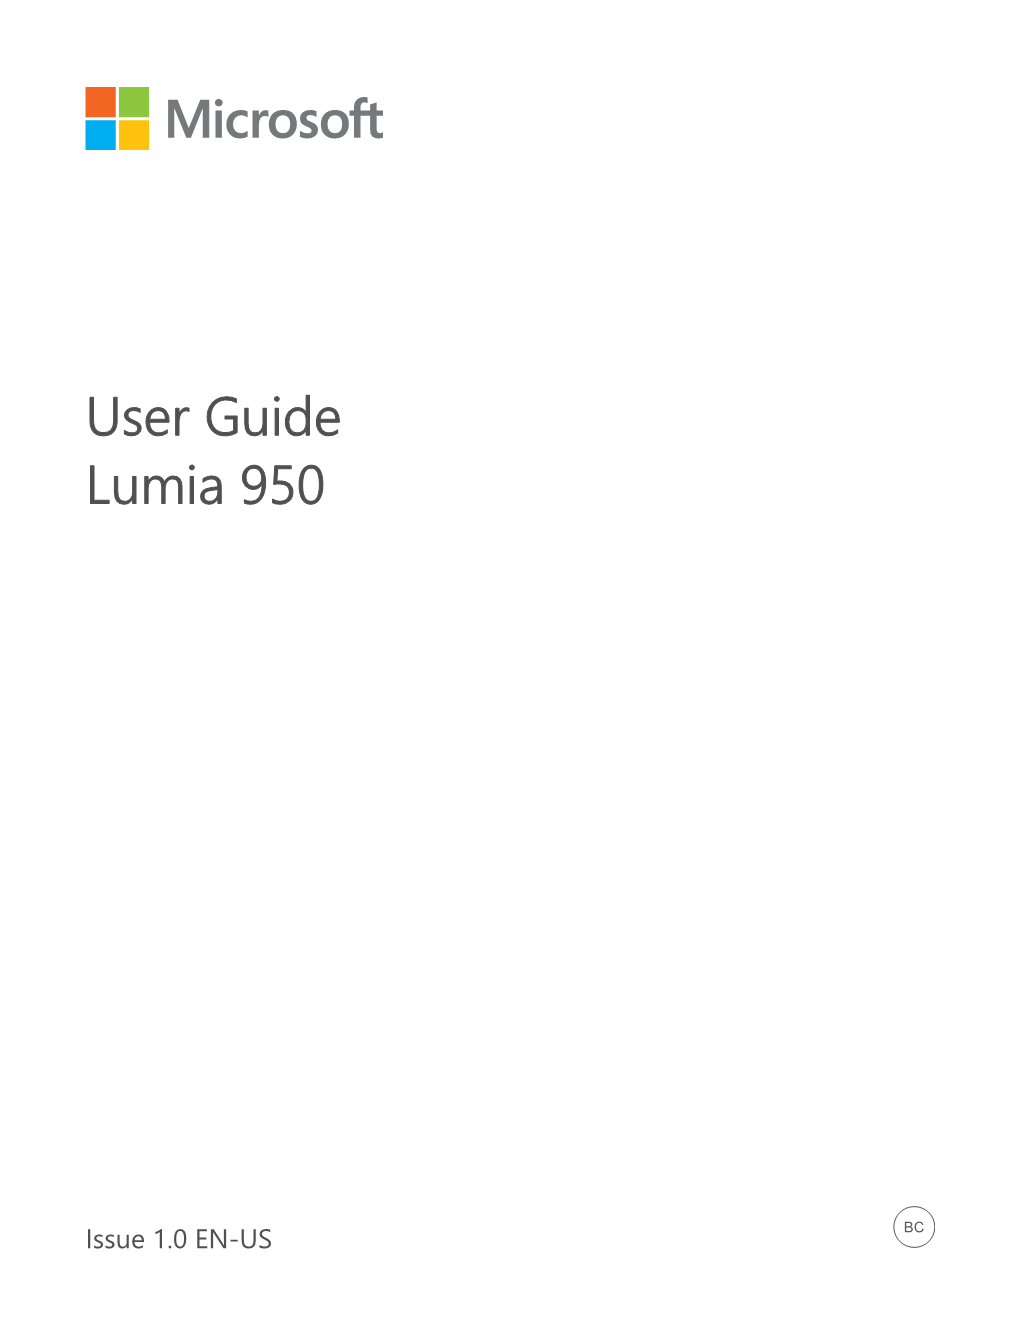 Lumia 950 User Guide